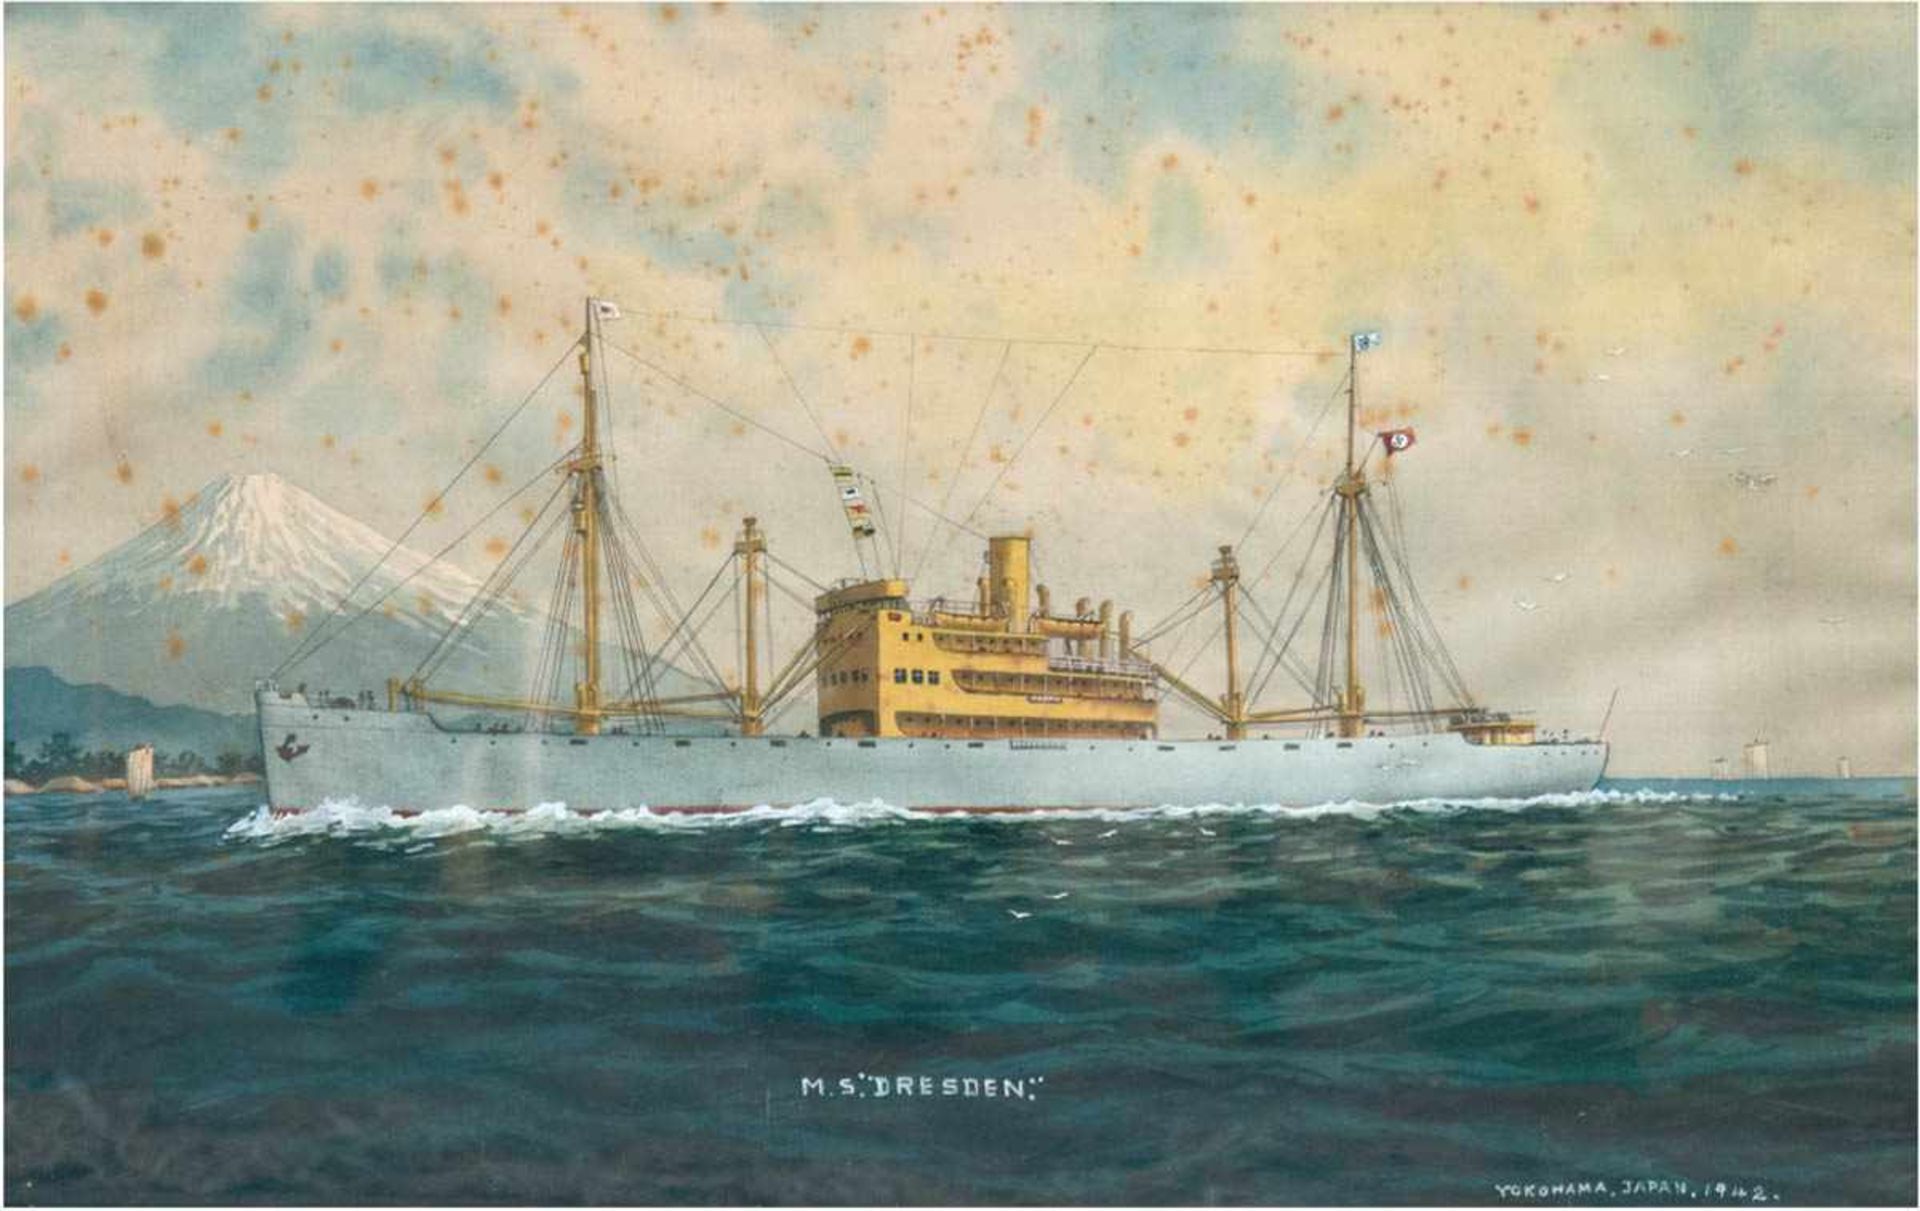 Marinebild "M.S. Dresden", Seidenmalerei, u.r. bez. "Yokohama, Japan 1942", stockfleckig,28x43 cm,